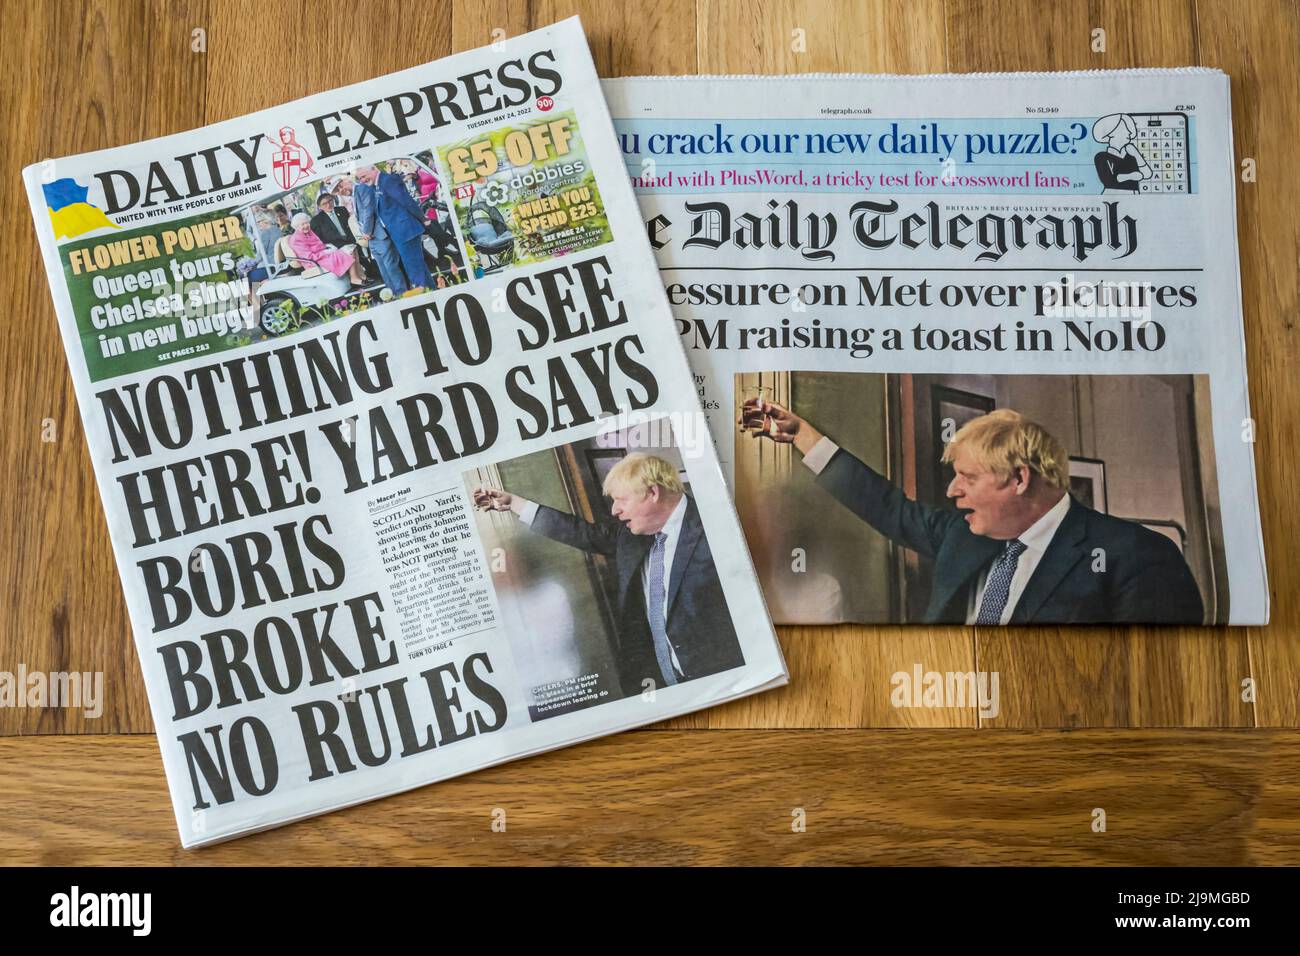 24 mai 2022. Les pages de couverture de Daily Express et Daily Telegraph remettent en question le jugement de la police métropolitaine alors que de nouvelles photos émergent des parties de confinement de Boris Johnson et Downing Street. Banque D'Images